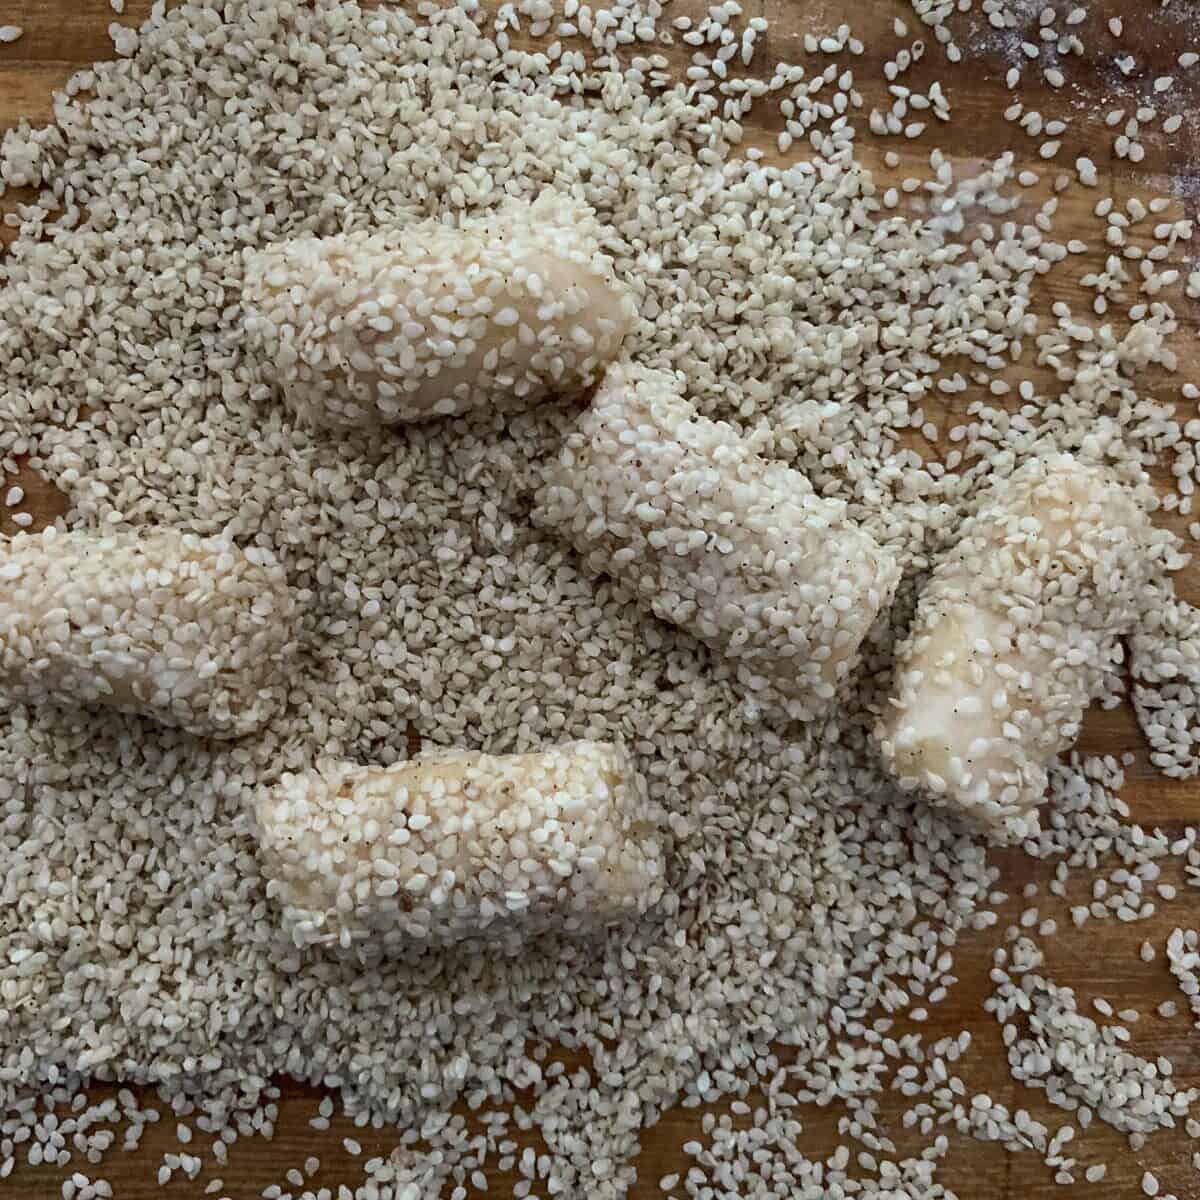 rolling cookies in sesame seeds